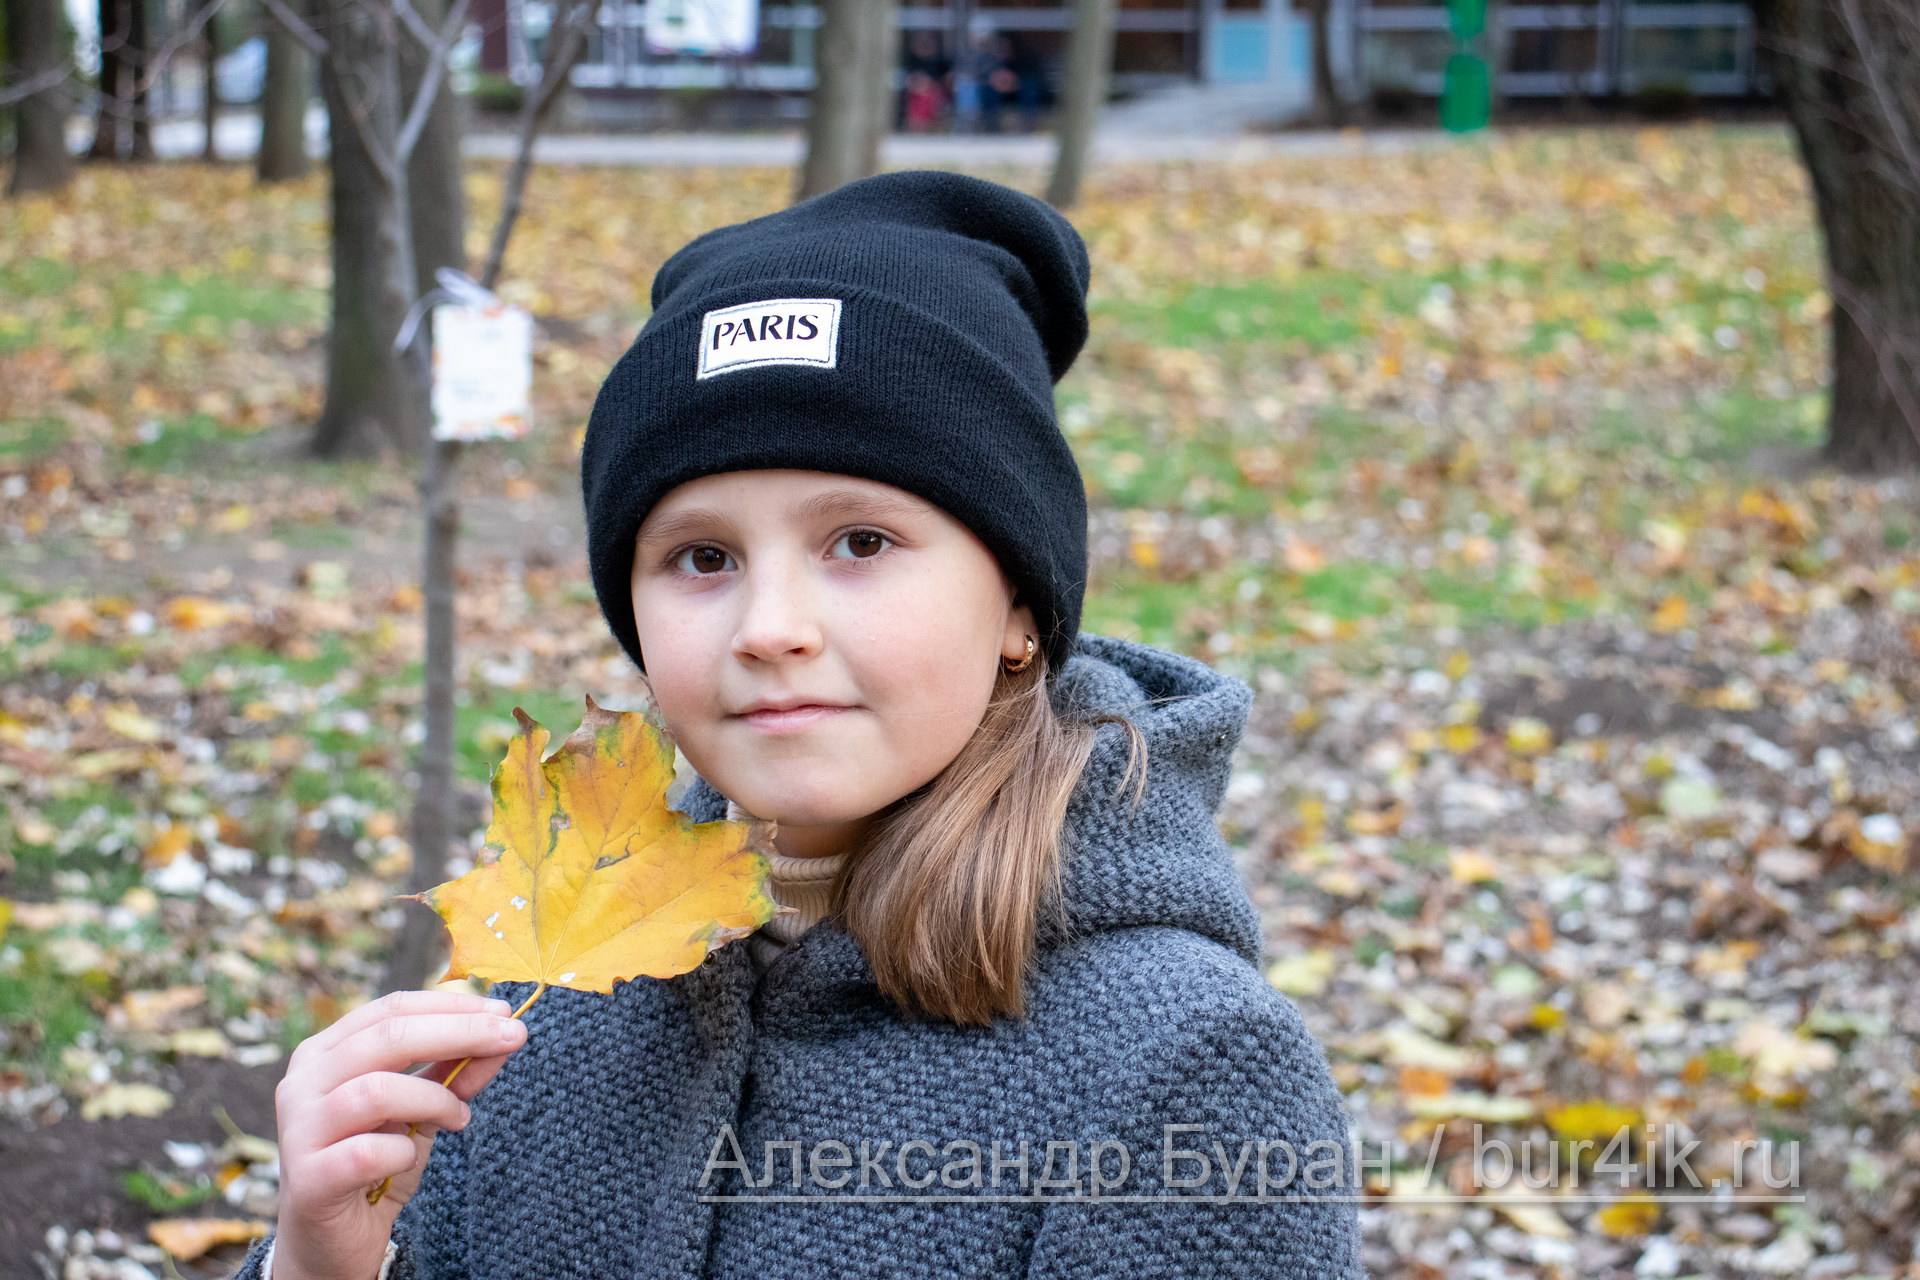 Девушка в осеннем парке принес желтый лист к ее лицу - Украина, Одесса, 17,10,2019